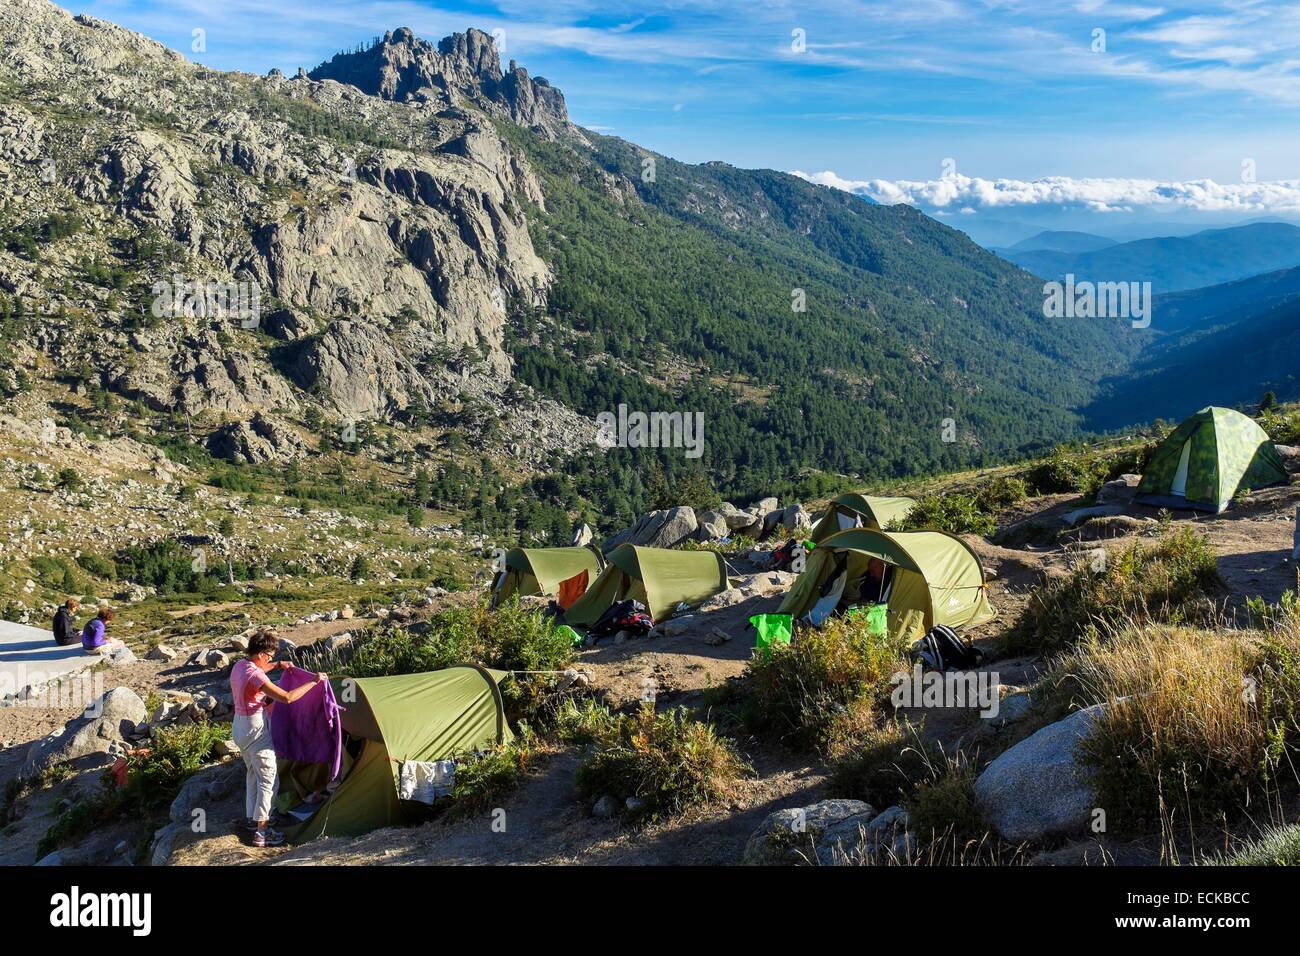 Frankreich, Corse du Sud, Wandern auf dem GR 20, zwischen ich Paliri Hütte und Asinao Zuflucht Campingplatz Asinao Zufluchtsort (Alt: 1530m), Aiguilles de Bavella im Hintergrund Stockfoto